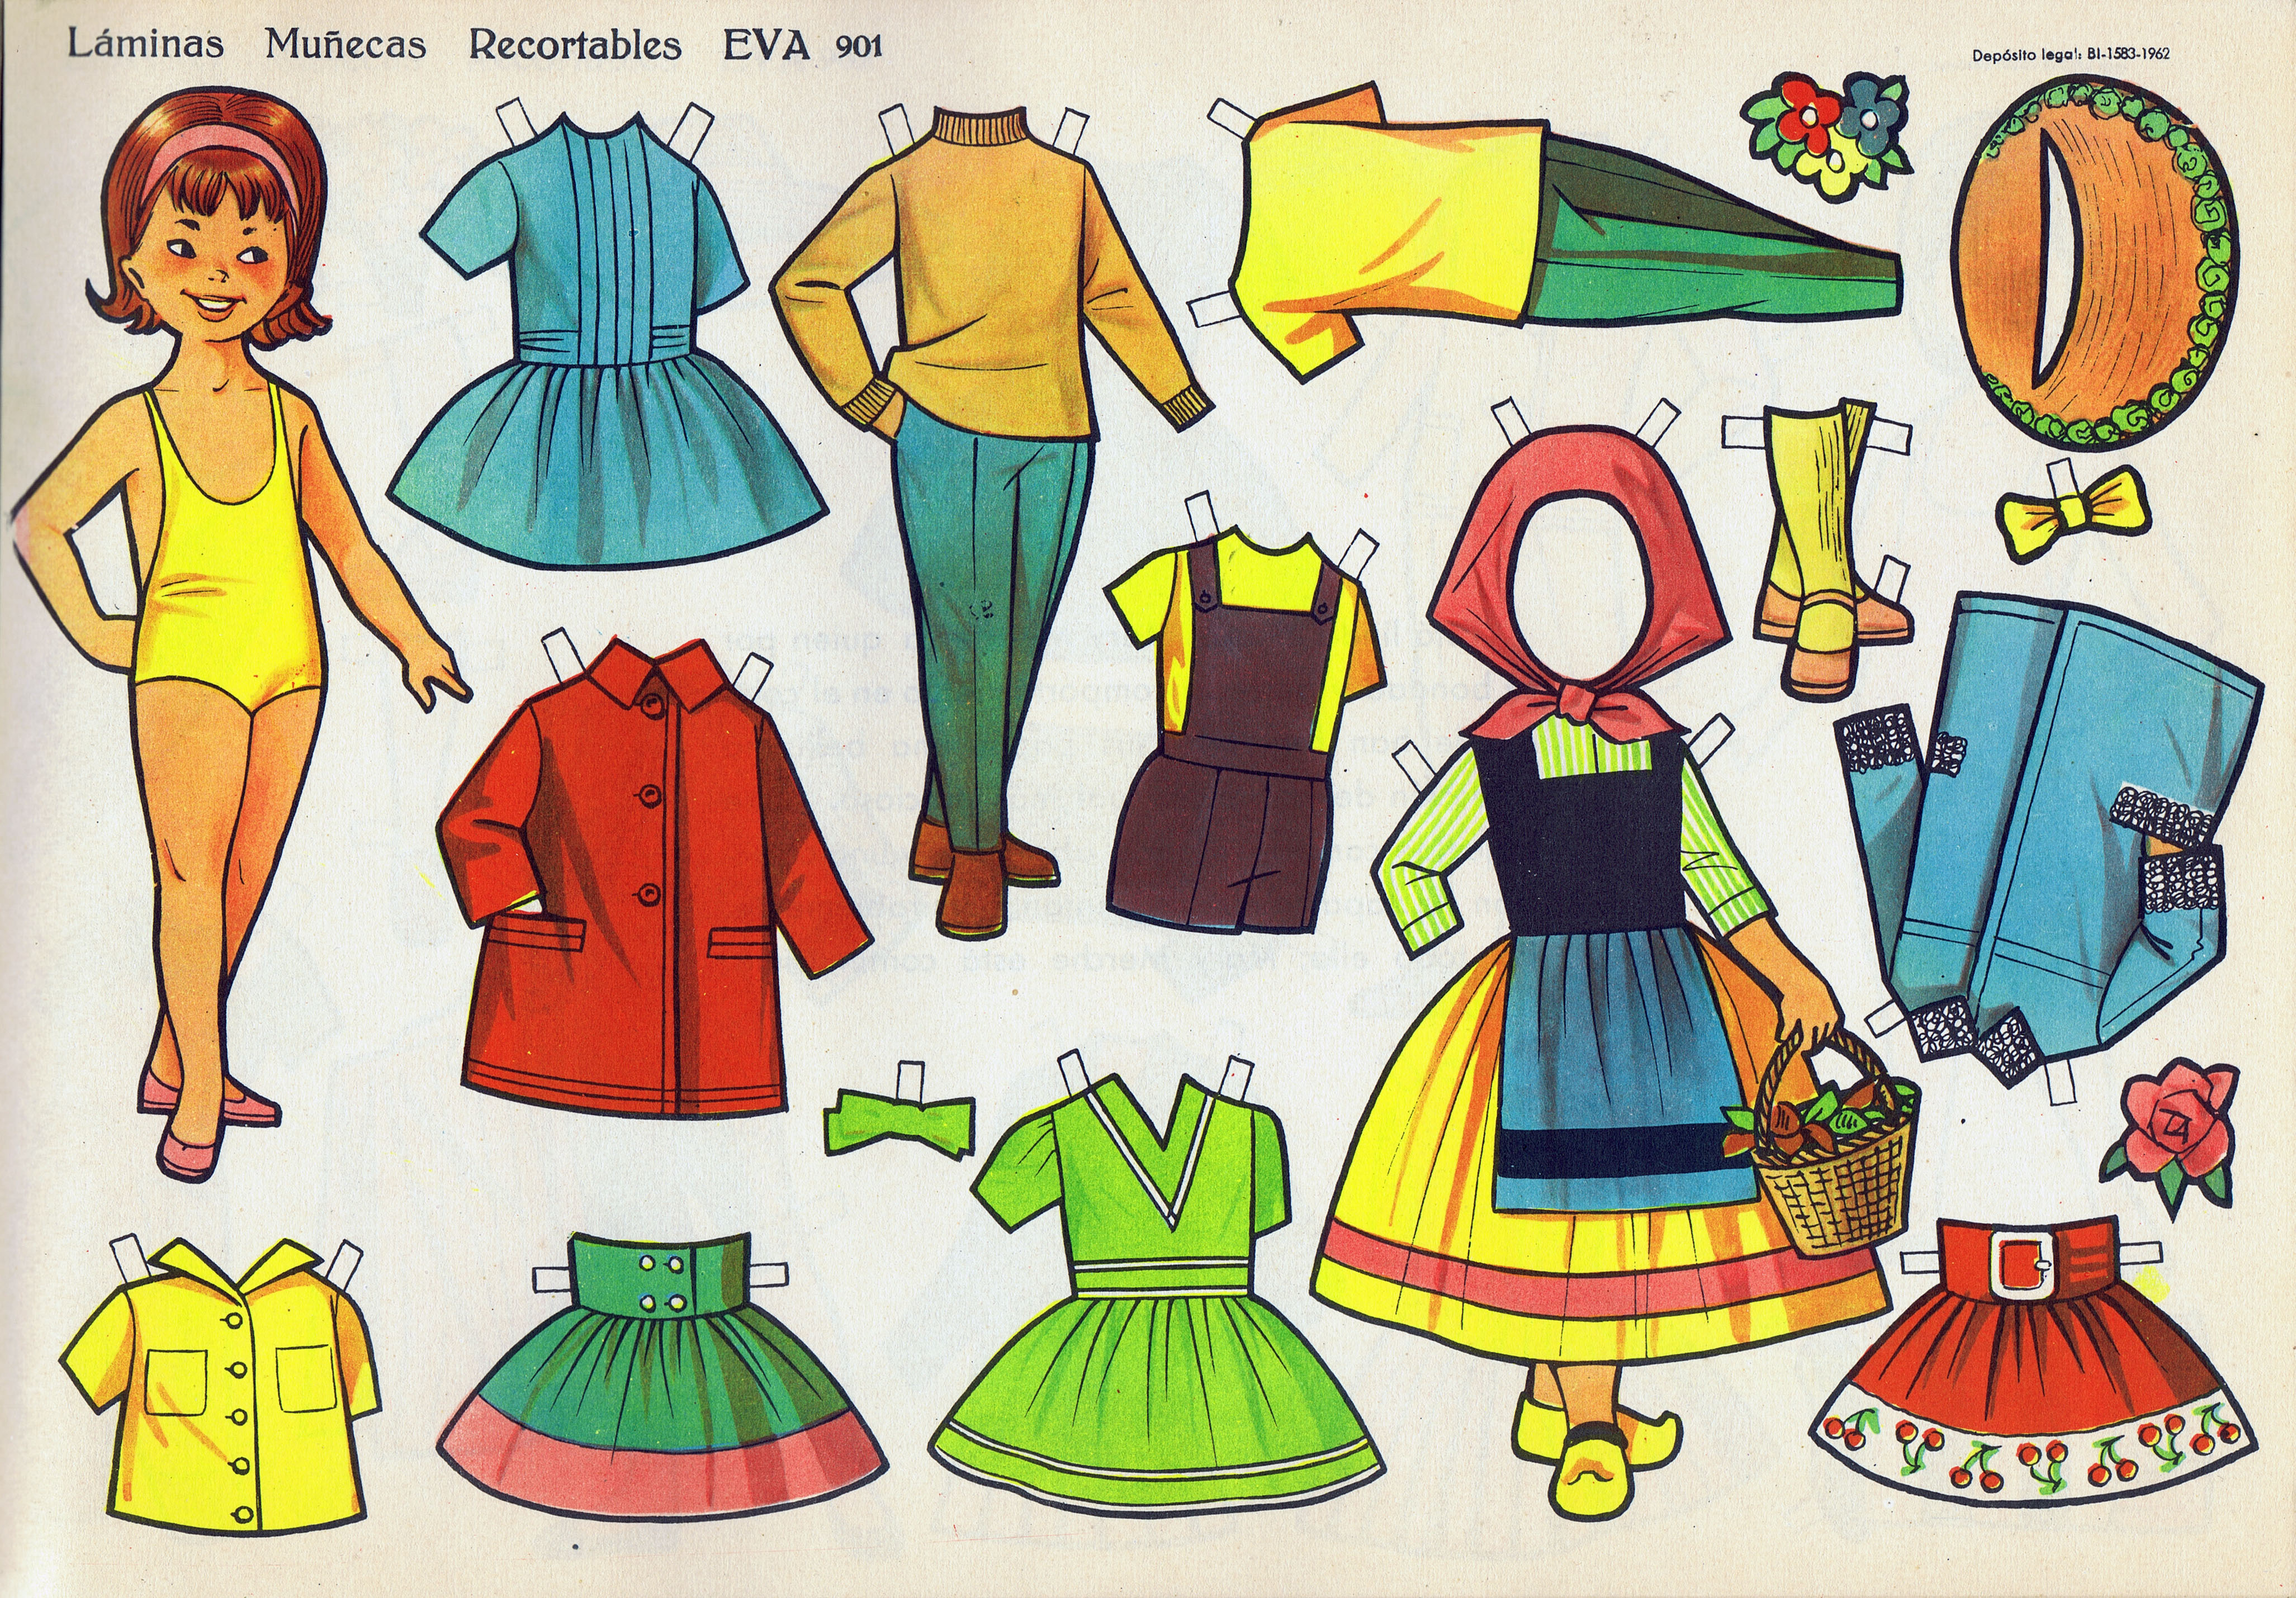 Serie completa de 10 antiguas láminas españolas de muñecas recortables  diferentes. Editorial EVA. Paper dolls.